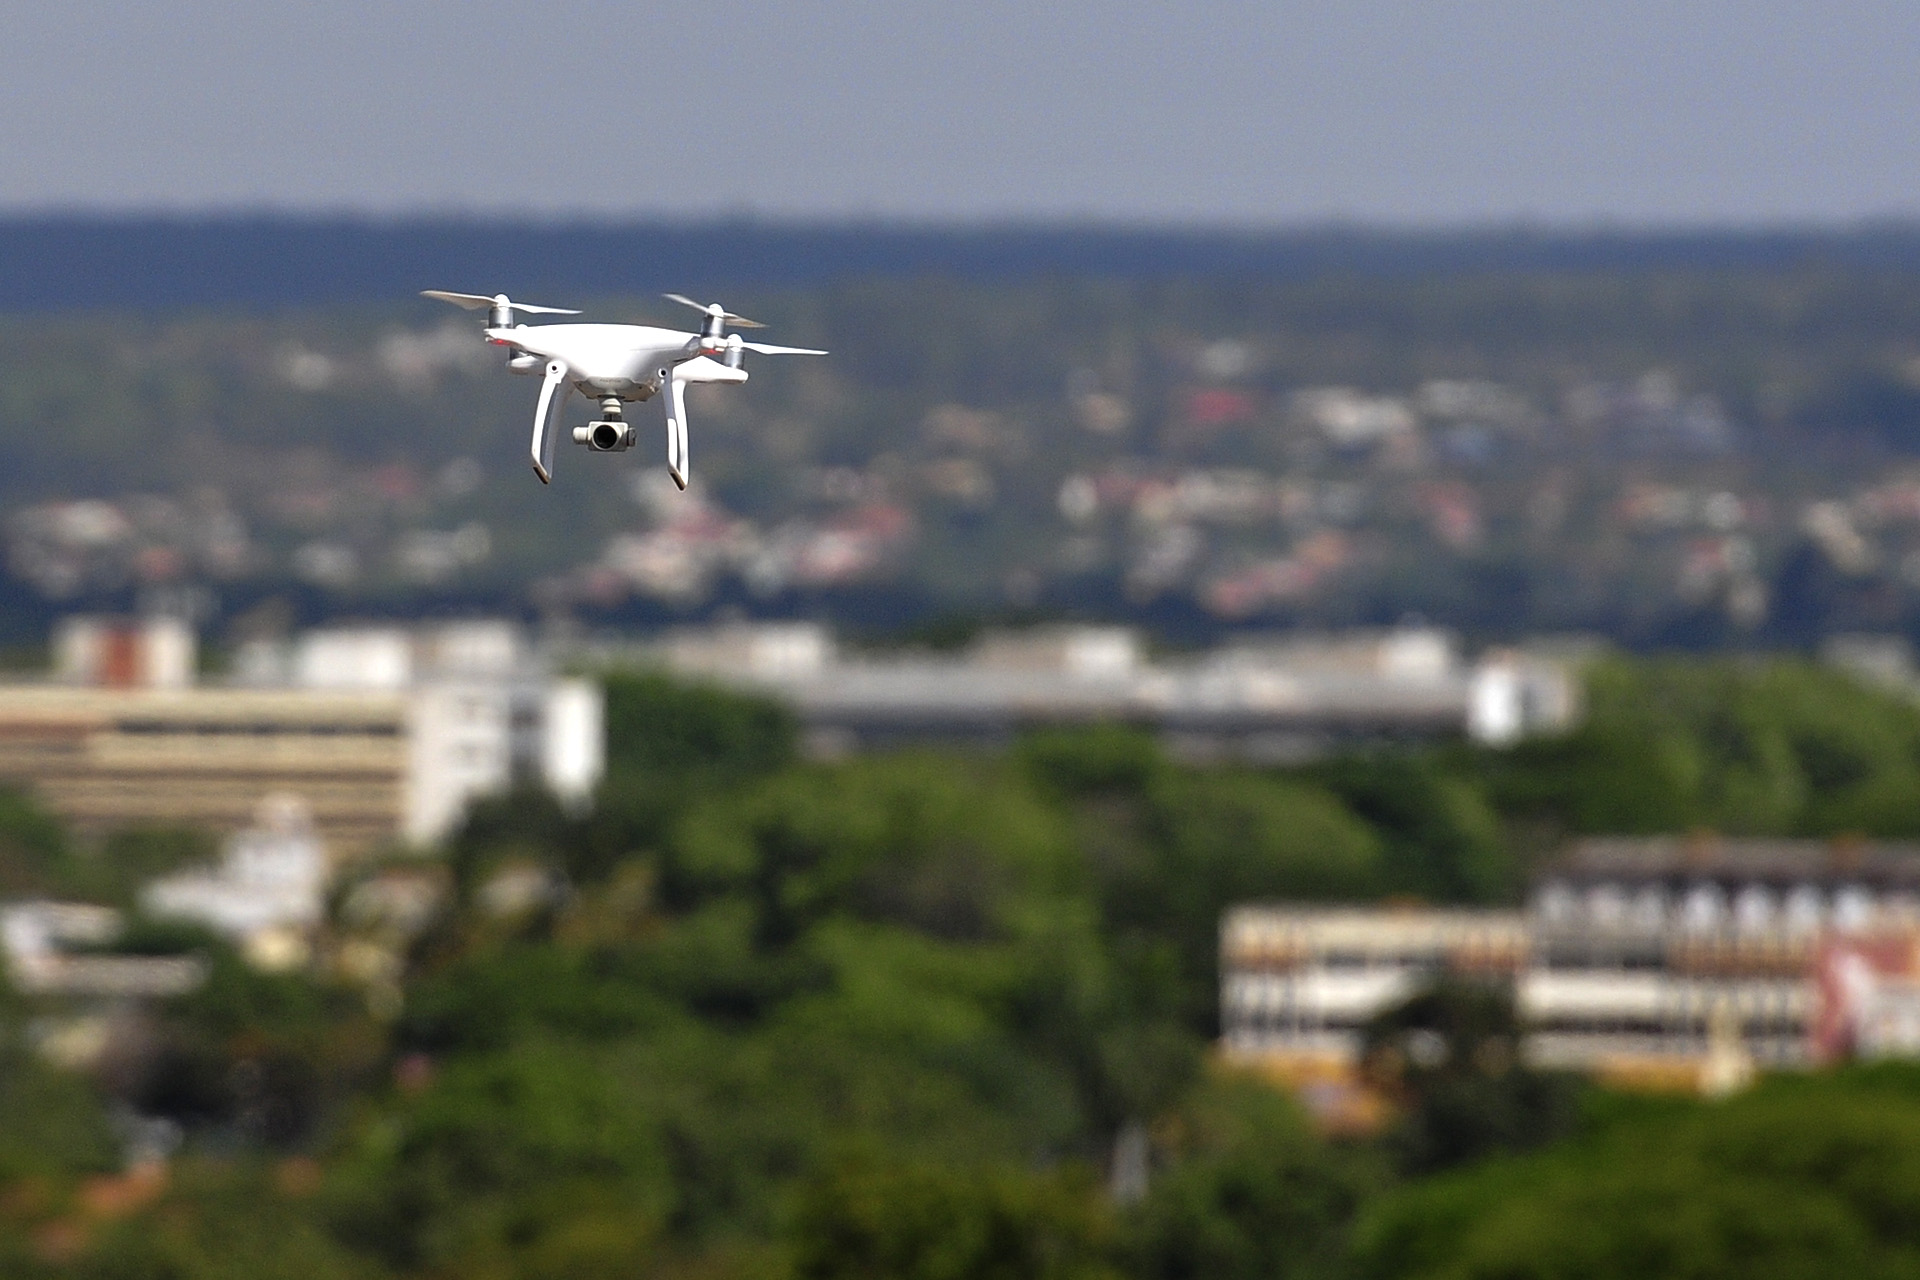 Doze novos drones foram adquiridos pela Polícia Civil e serão usados em diversas áreas da corporação